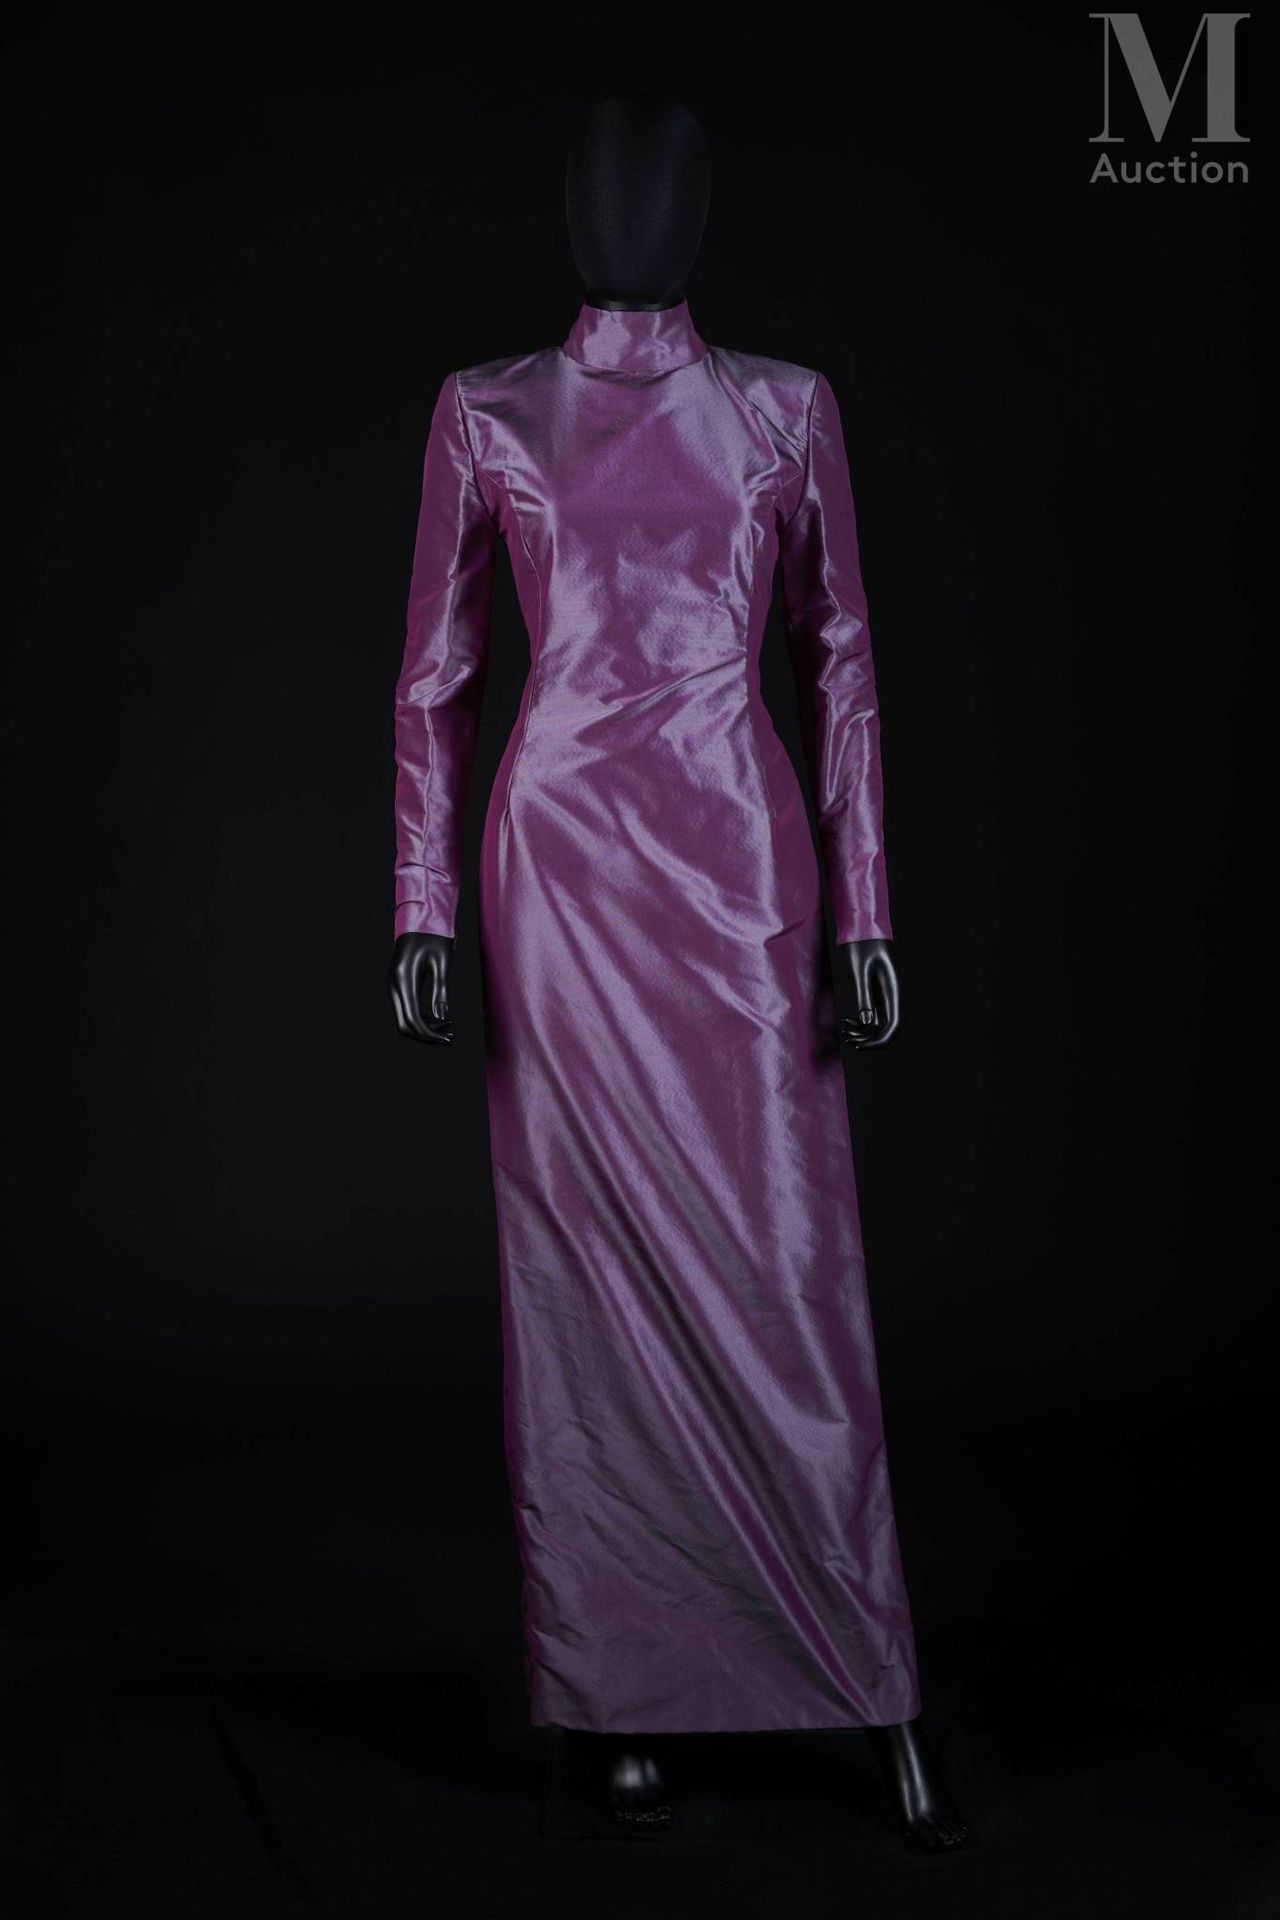 PACO RABANNE - 1980’s Vaina
en otomán de seda púrpura brillante
Garra blanca, gr&hellip;